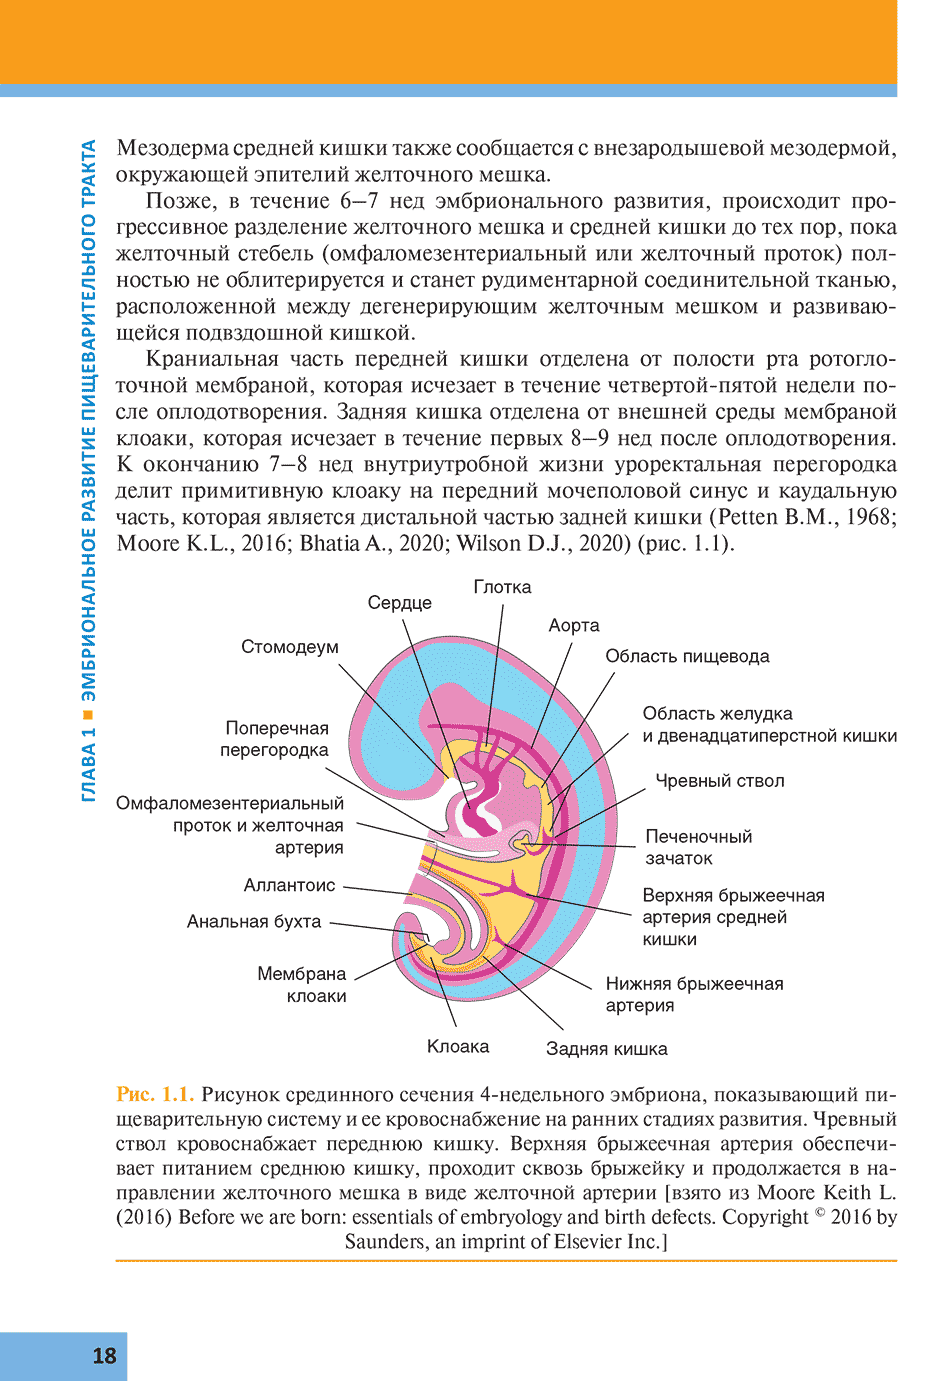 Рис. 1.1. Рисунок срединного сечения 4-недельного эмбриона